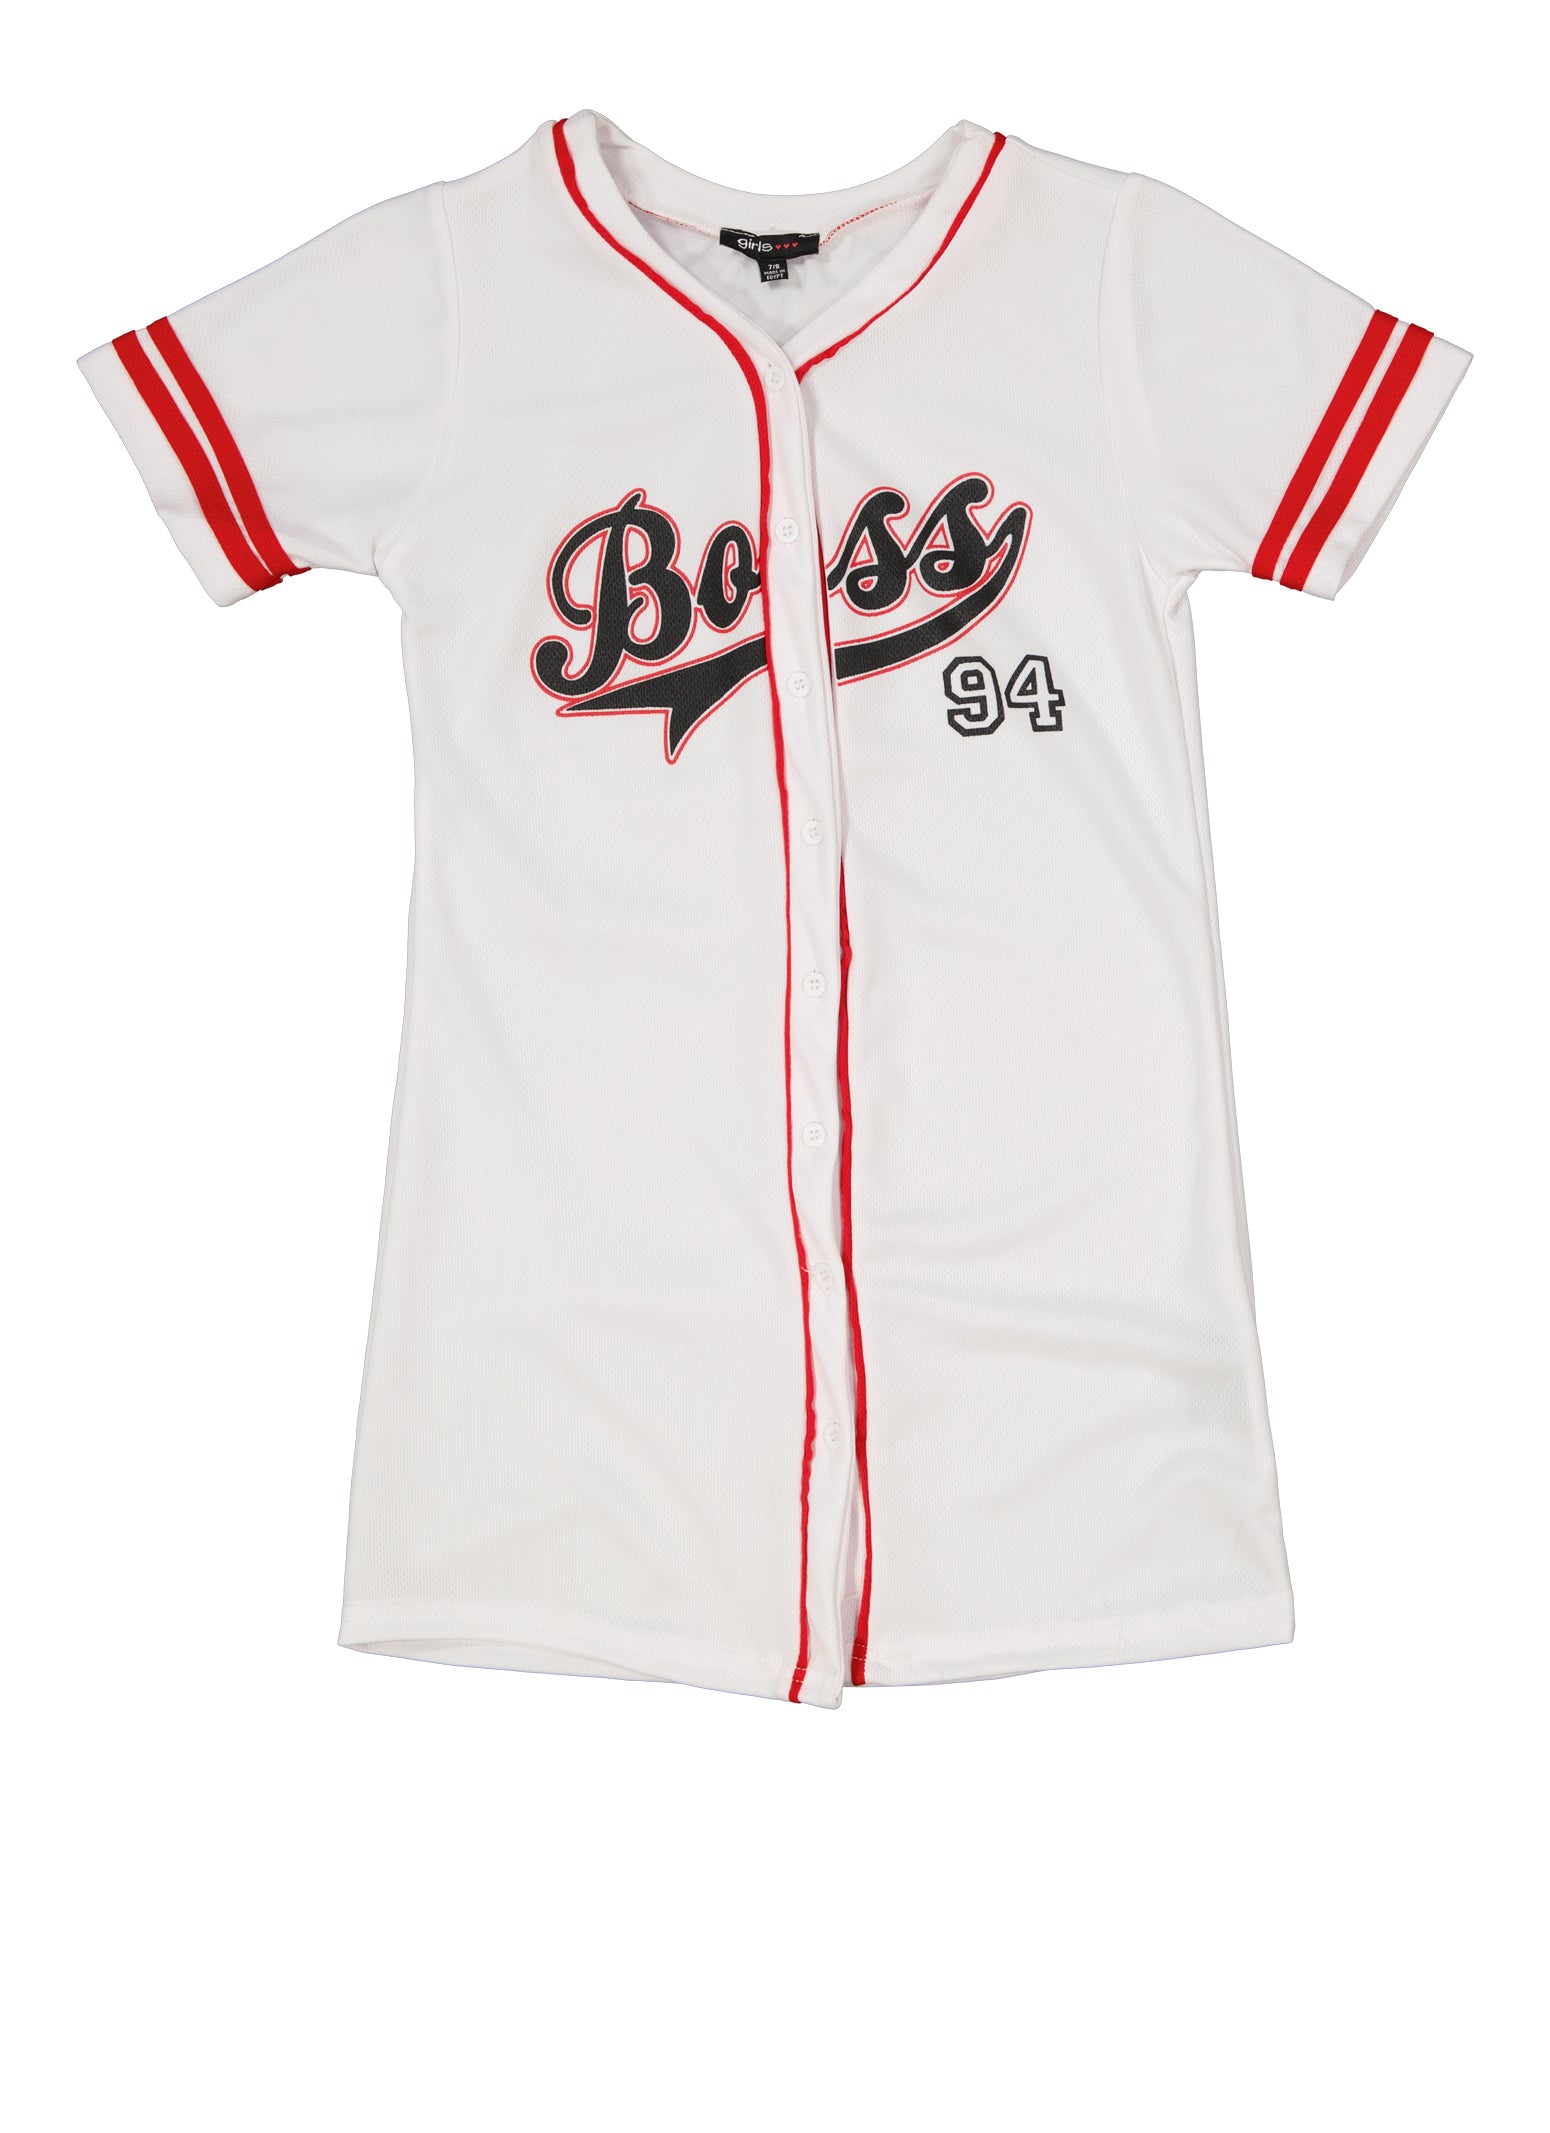 Girls Boss 97 Baseball Jersey Dress, White, Size 7-8 | Rainbow Shops